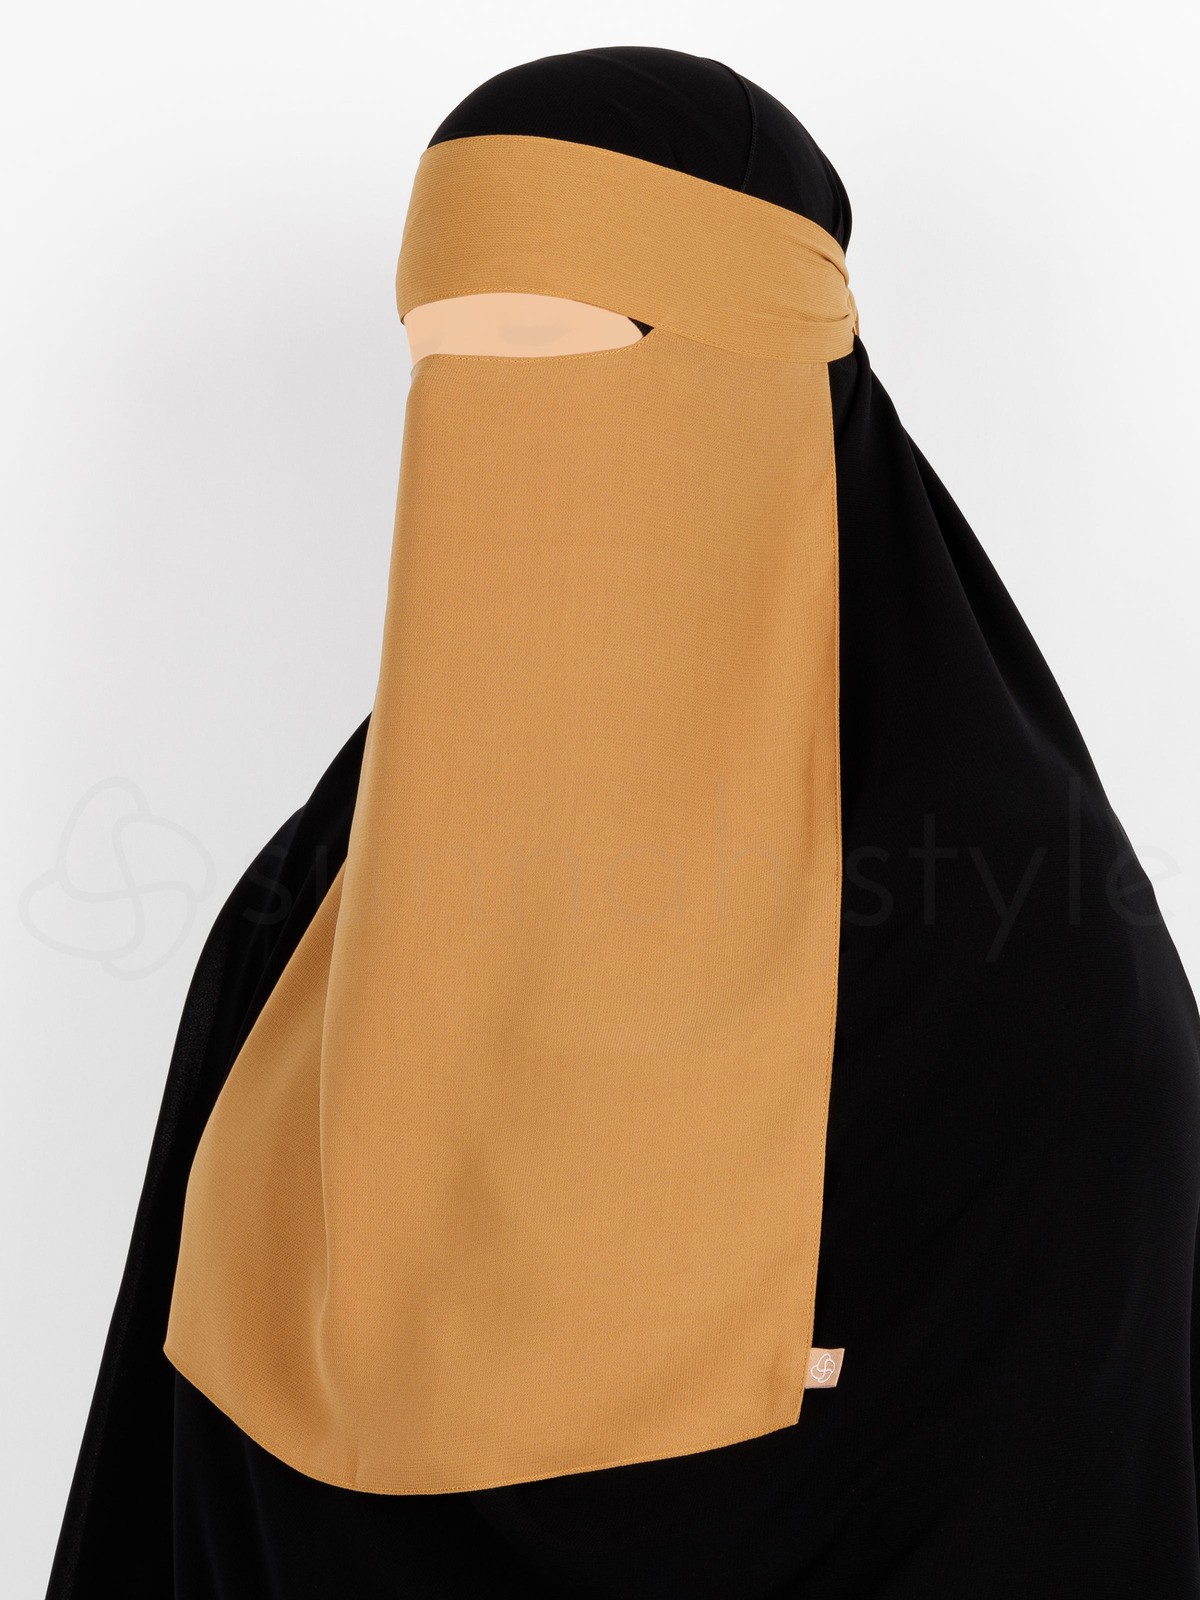 Sunnah Style - Narrow No-Pinch One Layer Niqab (Honey)